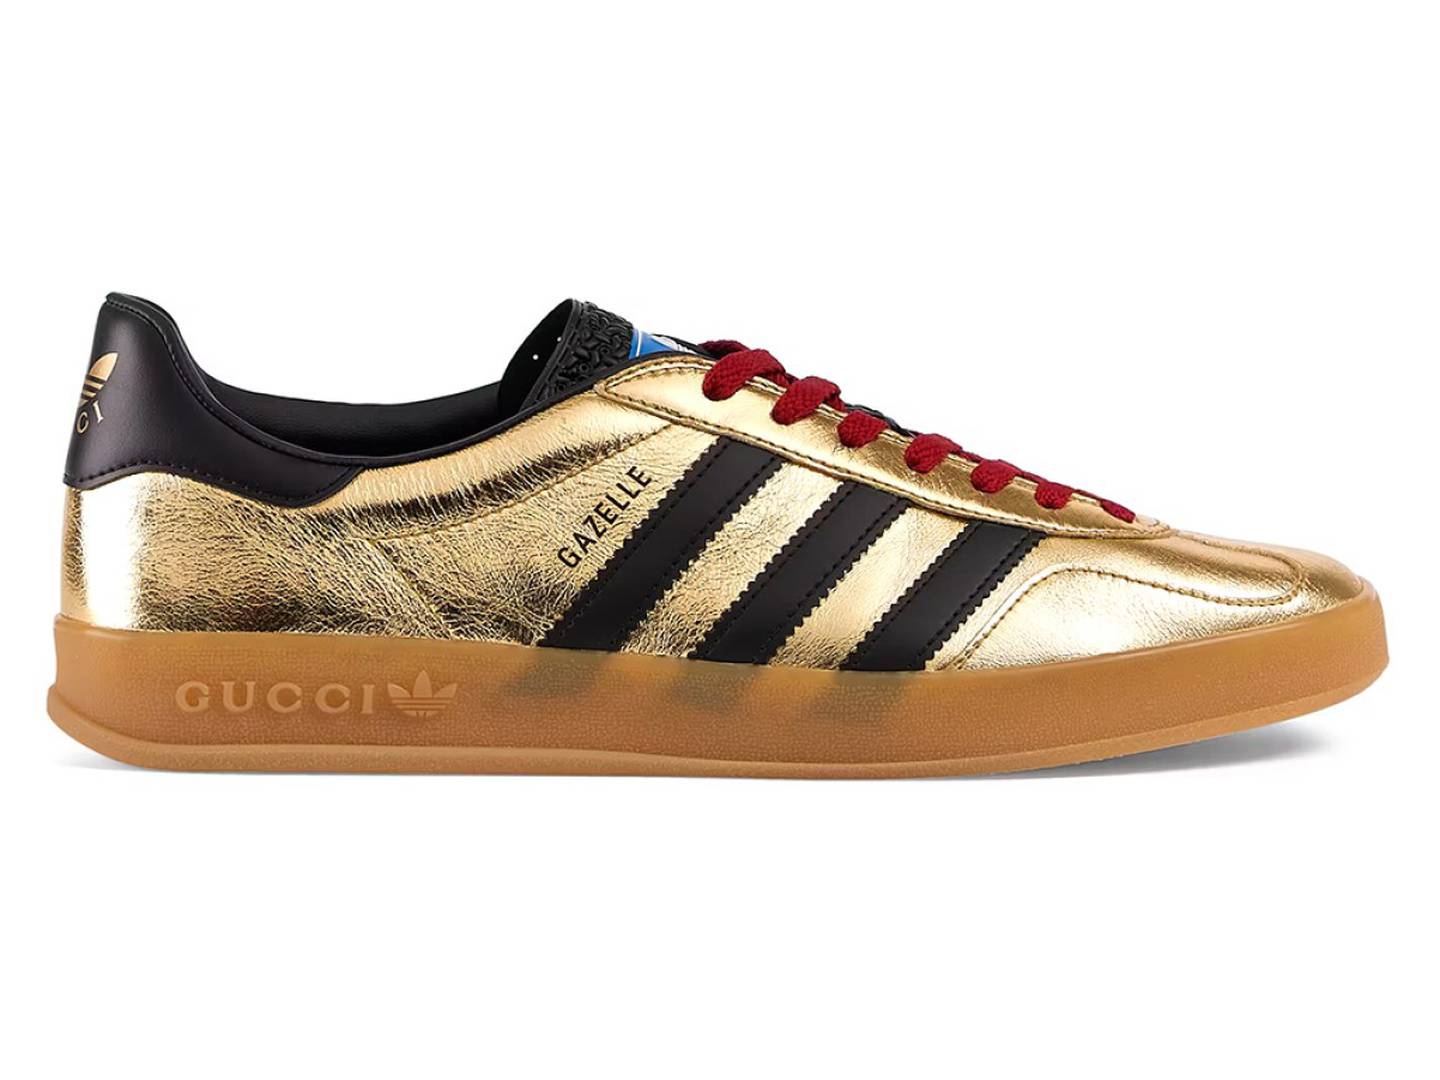 Gucci x Adidas Gazelle, lujo para jugar fútbol: el prohibitivo de estas zapatillas te dejará asombrado – FayerWayer